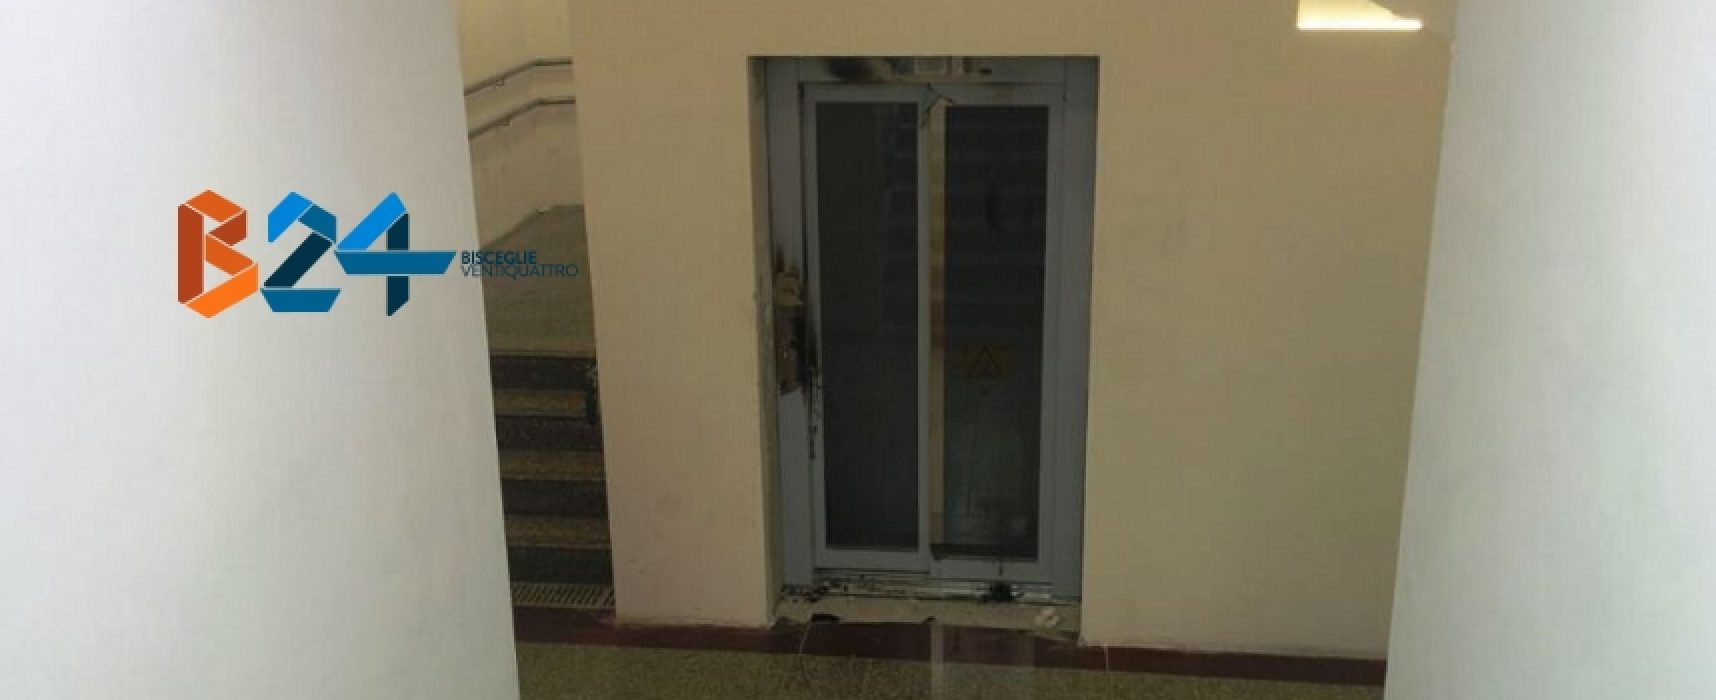 Vandali danneggiano ascensore sottopassaggio della stazione ferroviaria / FOTO